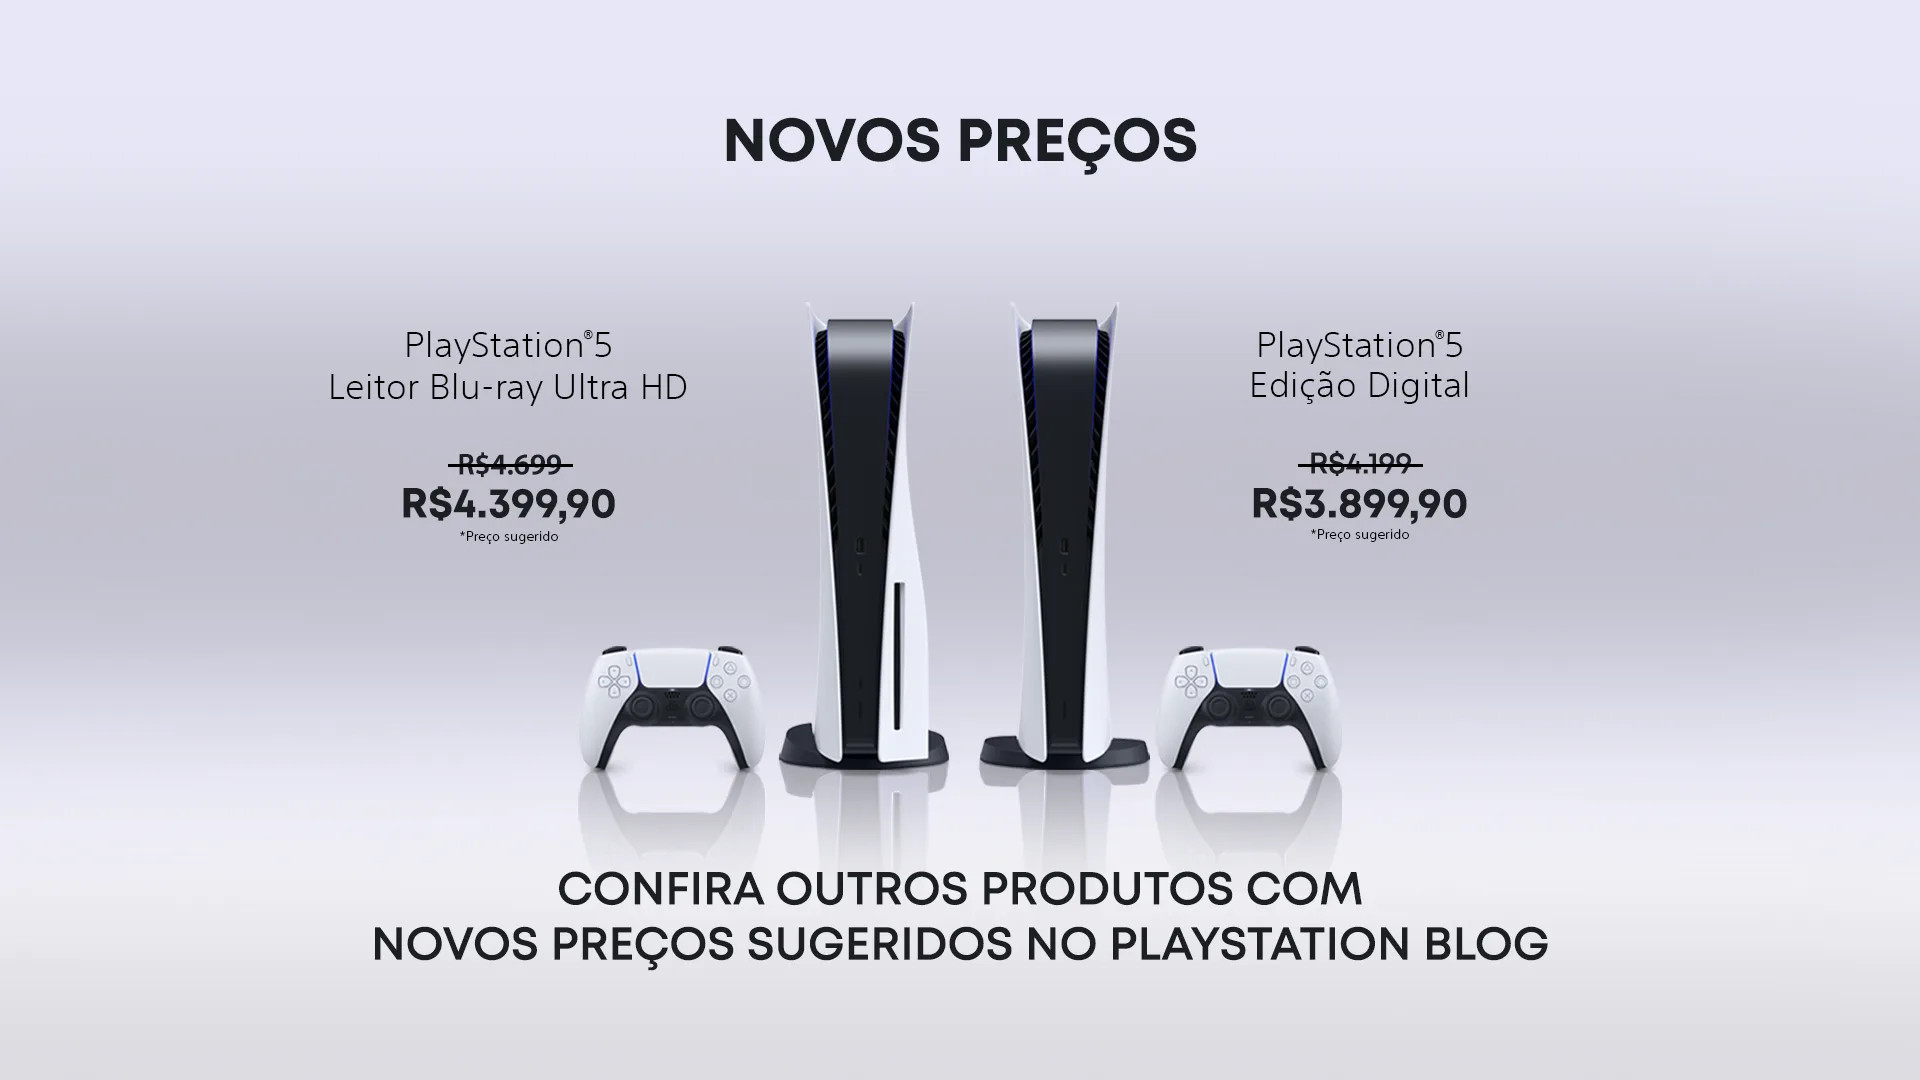 Toda a linha PlayStation sofre redução de preço no Brasil